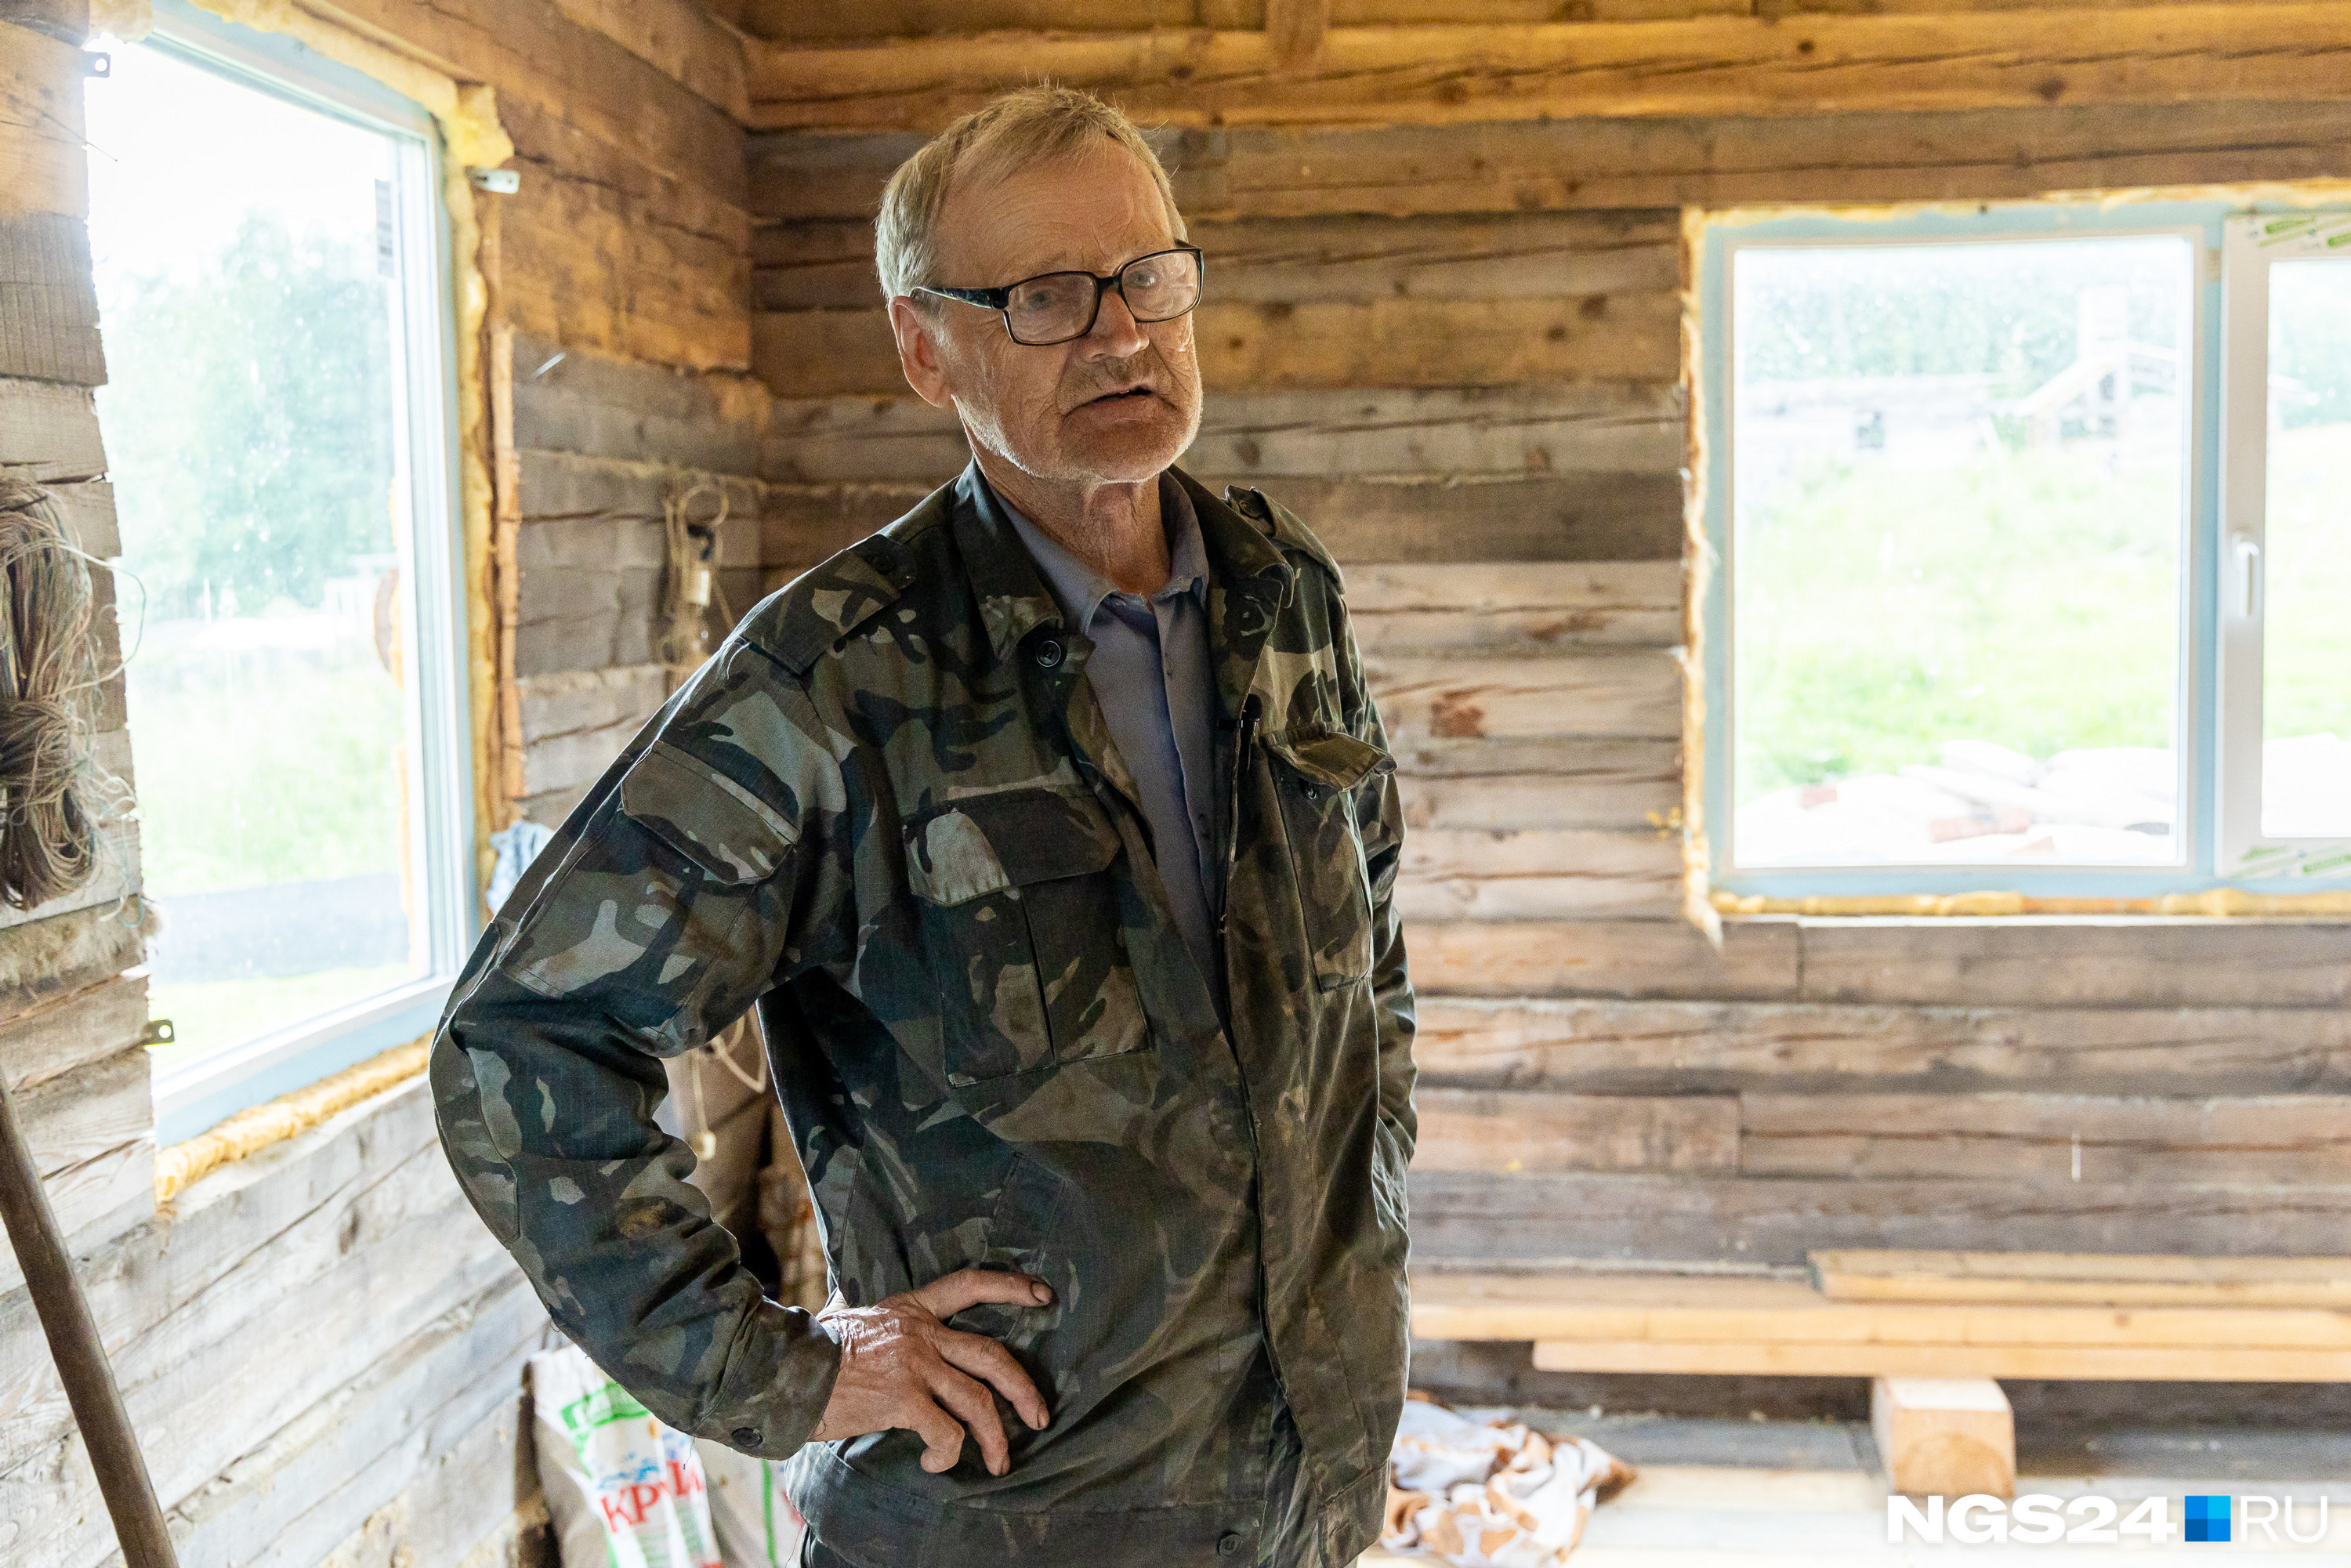 Анатолий Федорович строит дом в заброшенном селе вопреки желанию родственников